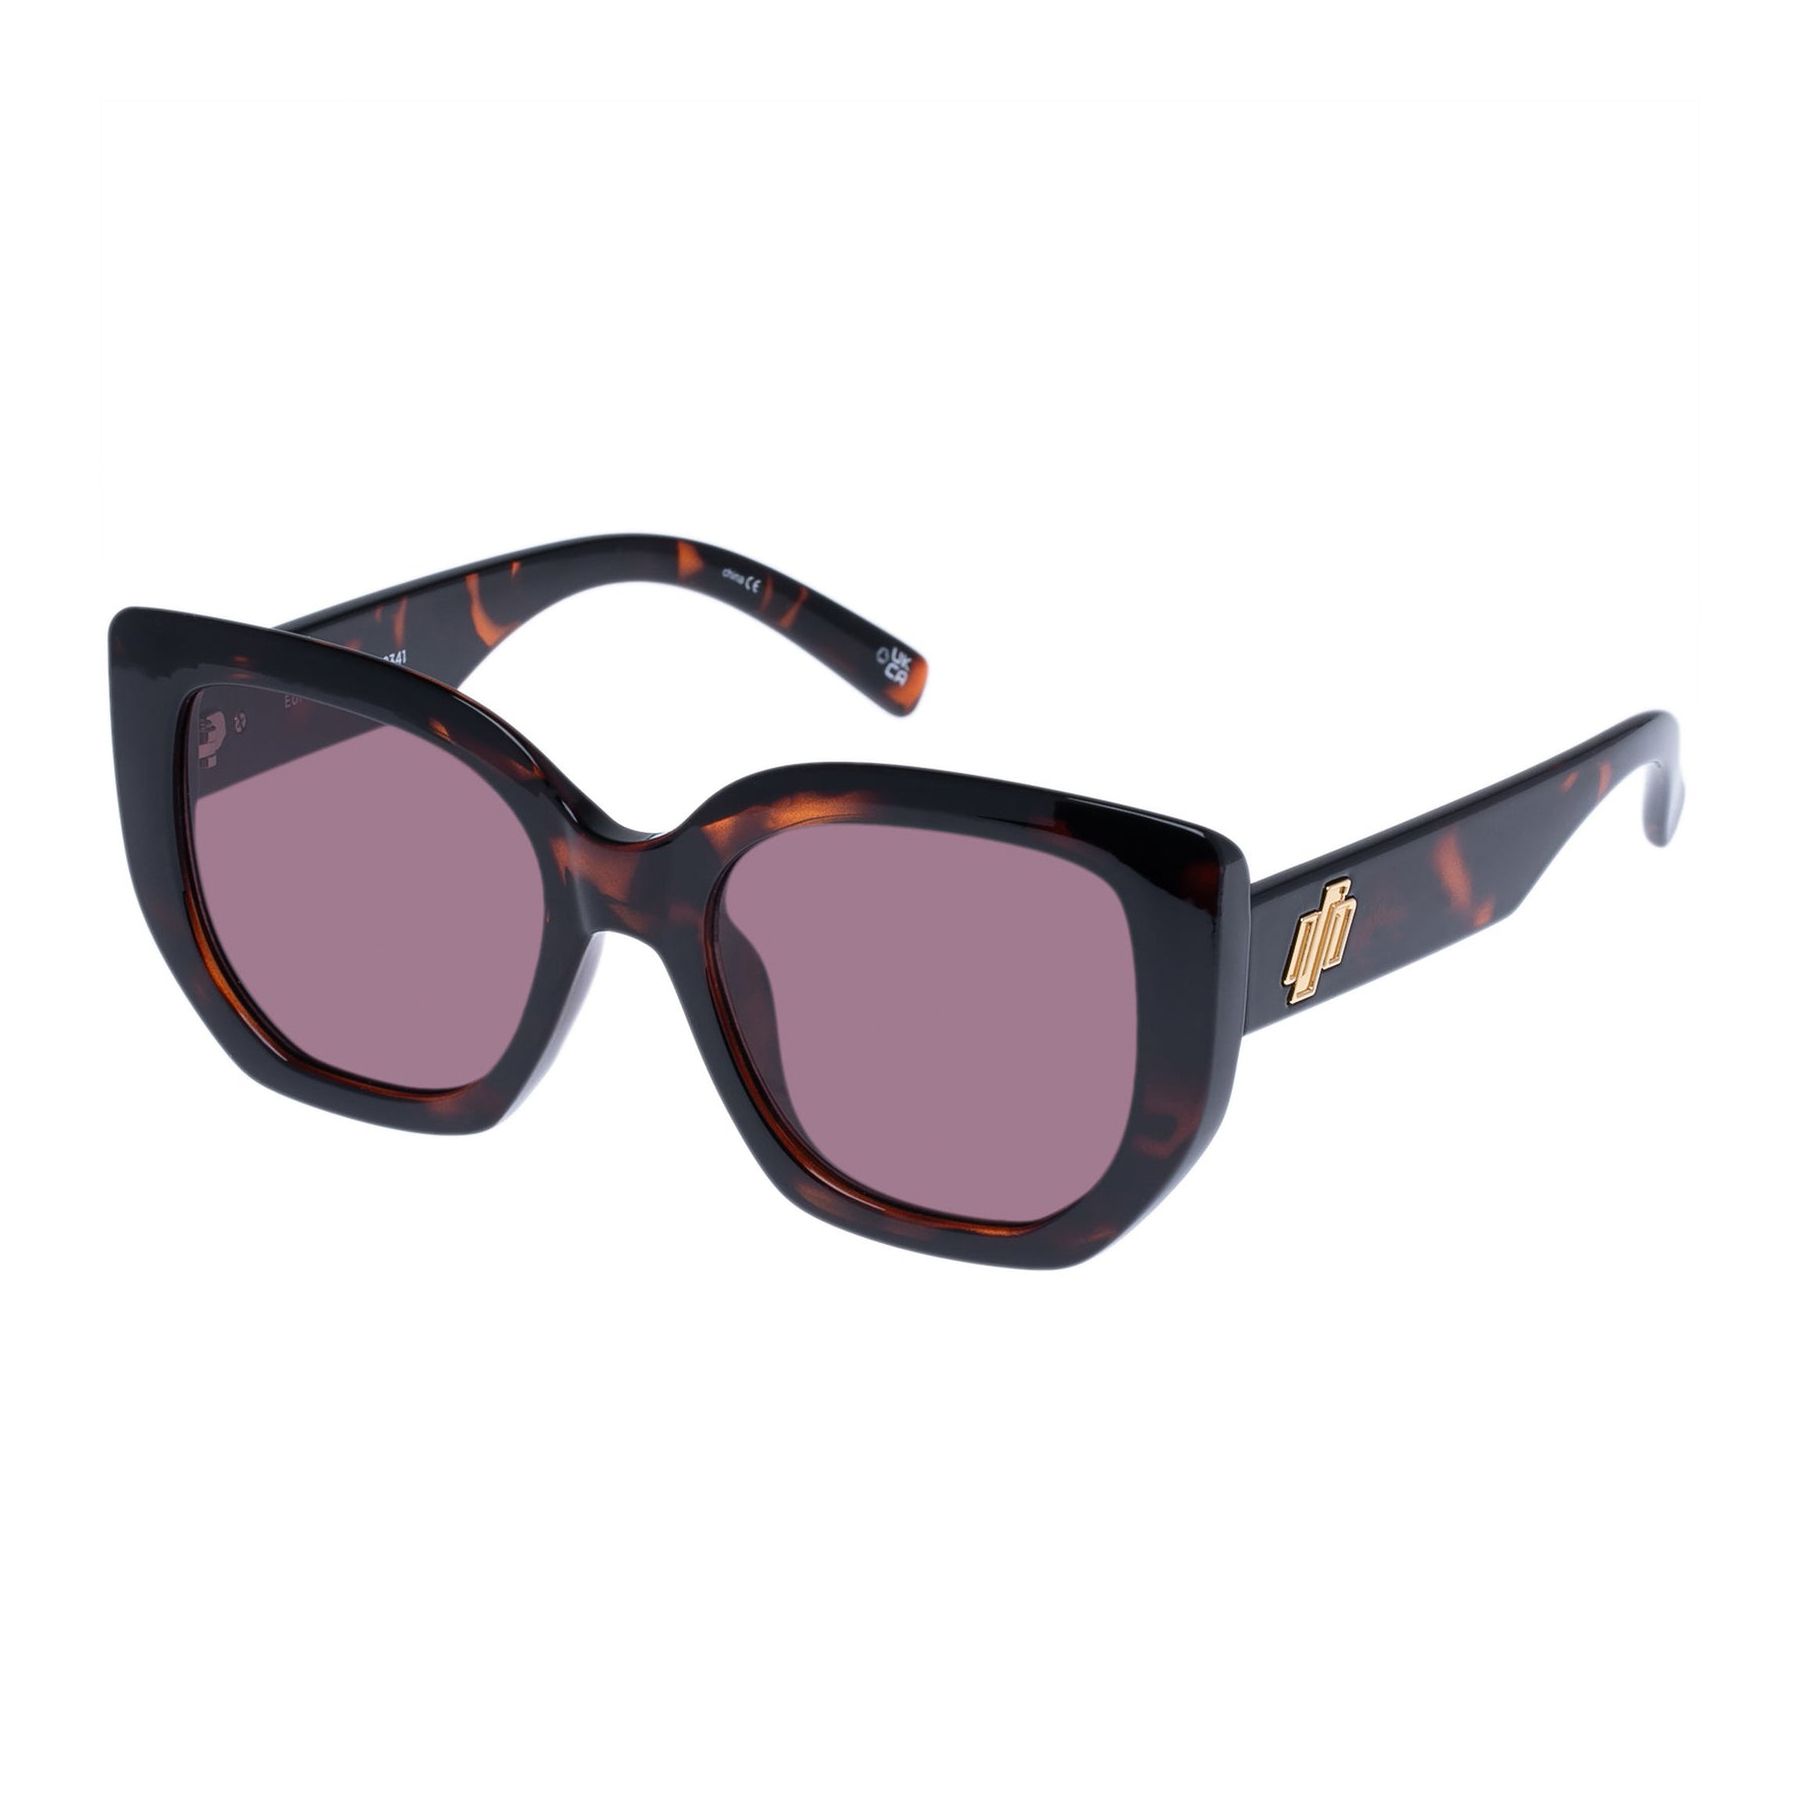 EUPHORIA Square Sunglasses SUPER DARK TORT - size 52